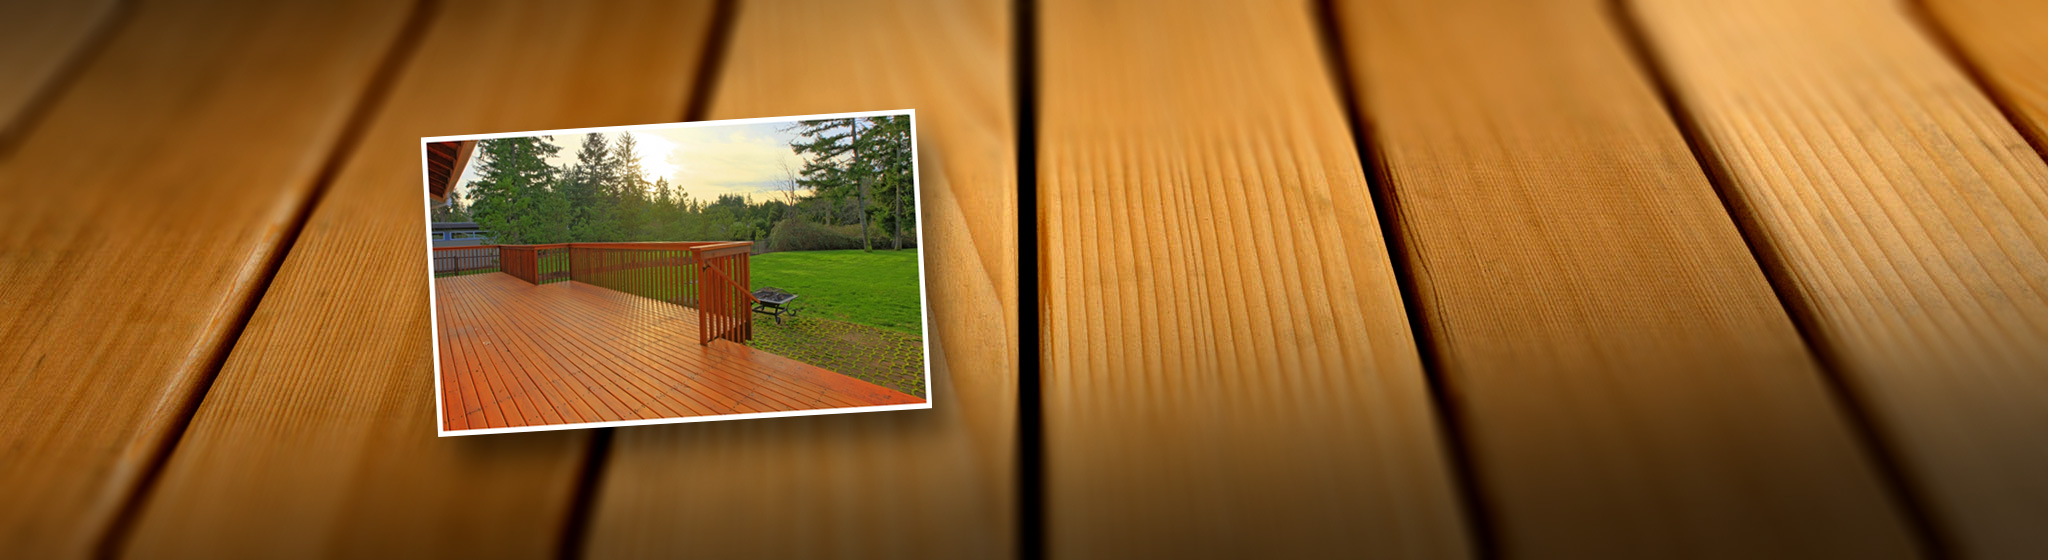 cedar deck materials vancouver washington